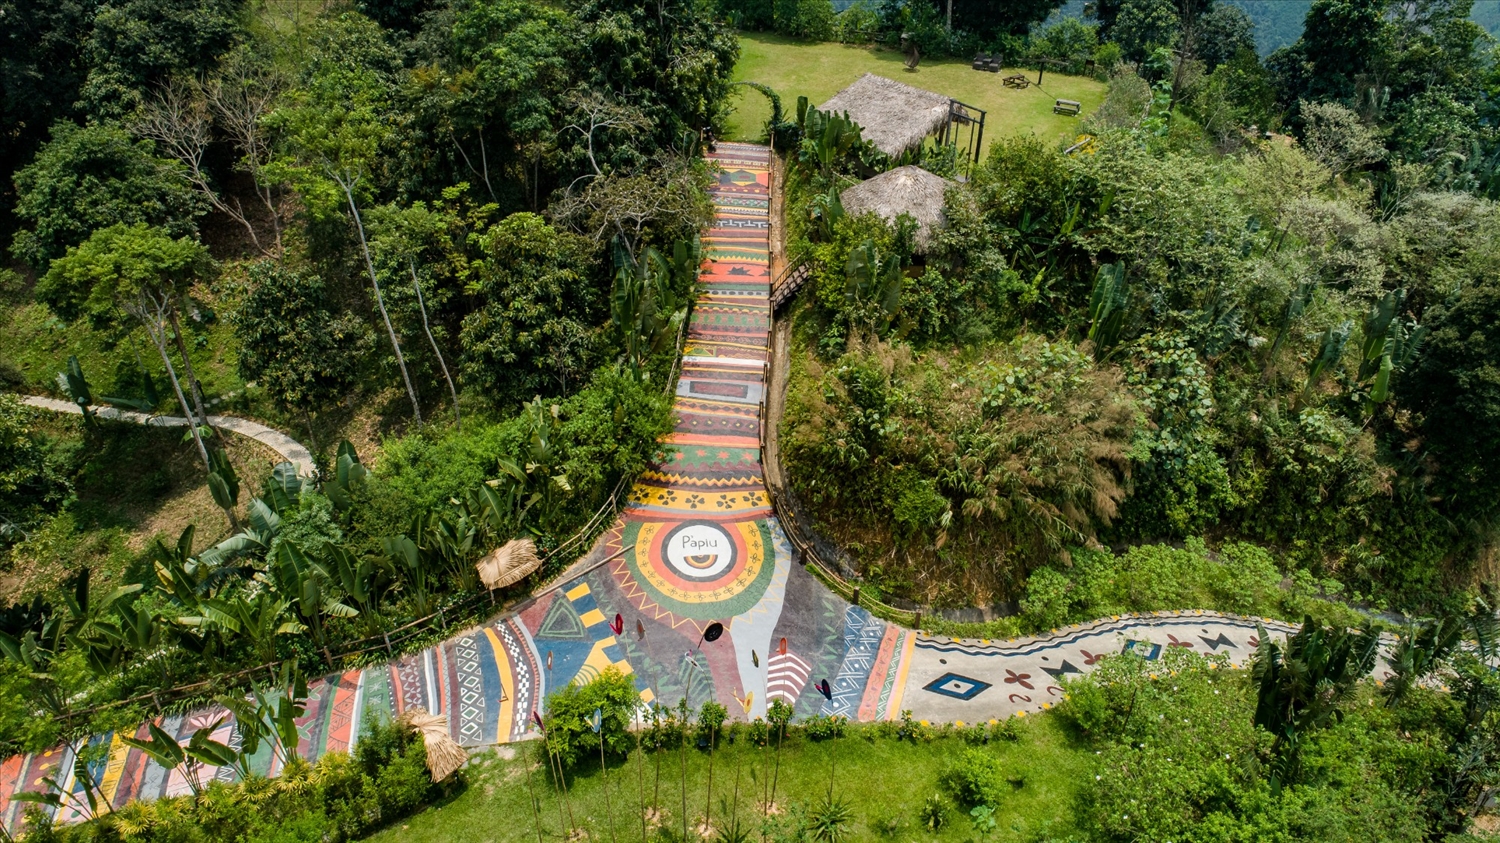 Con đường thổ cẩm dài nhất Việt Nam tại Khu nghỉ dưỡng cao cấp P'apiu Resort 